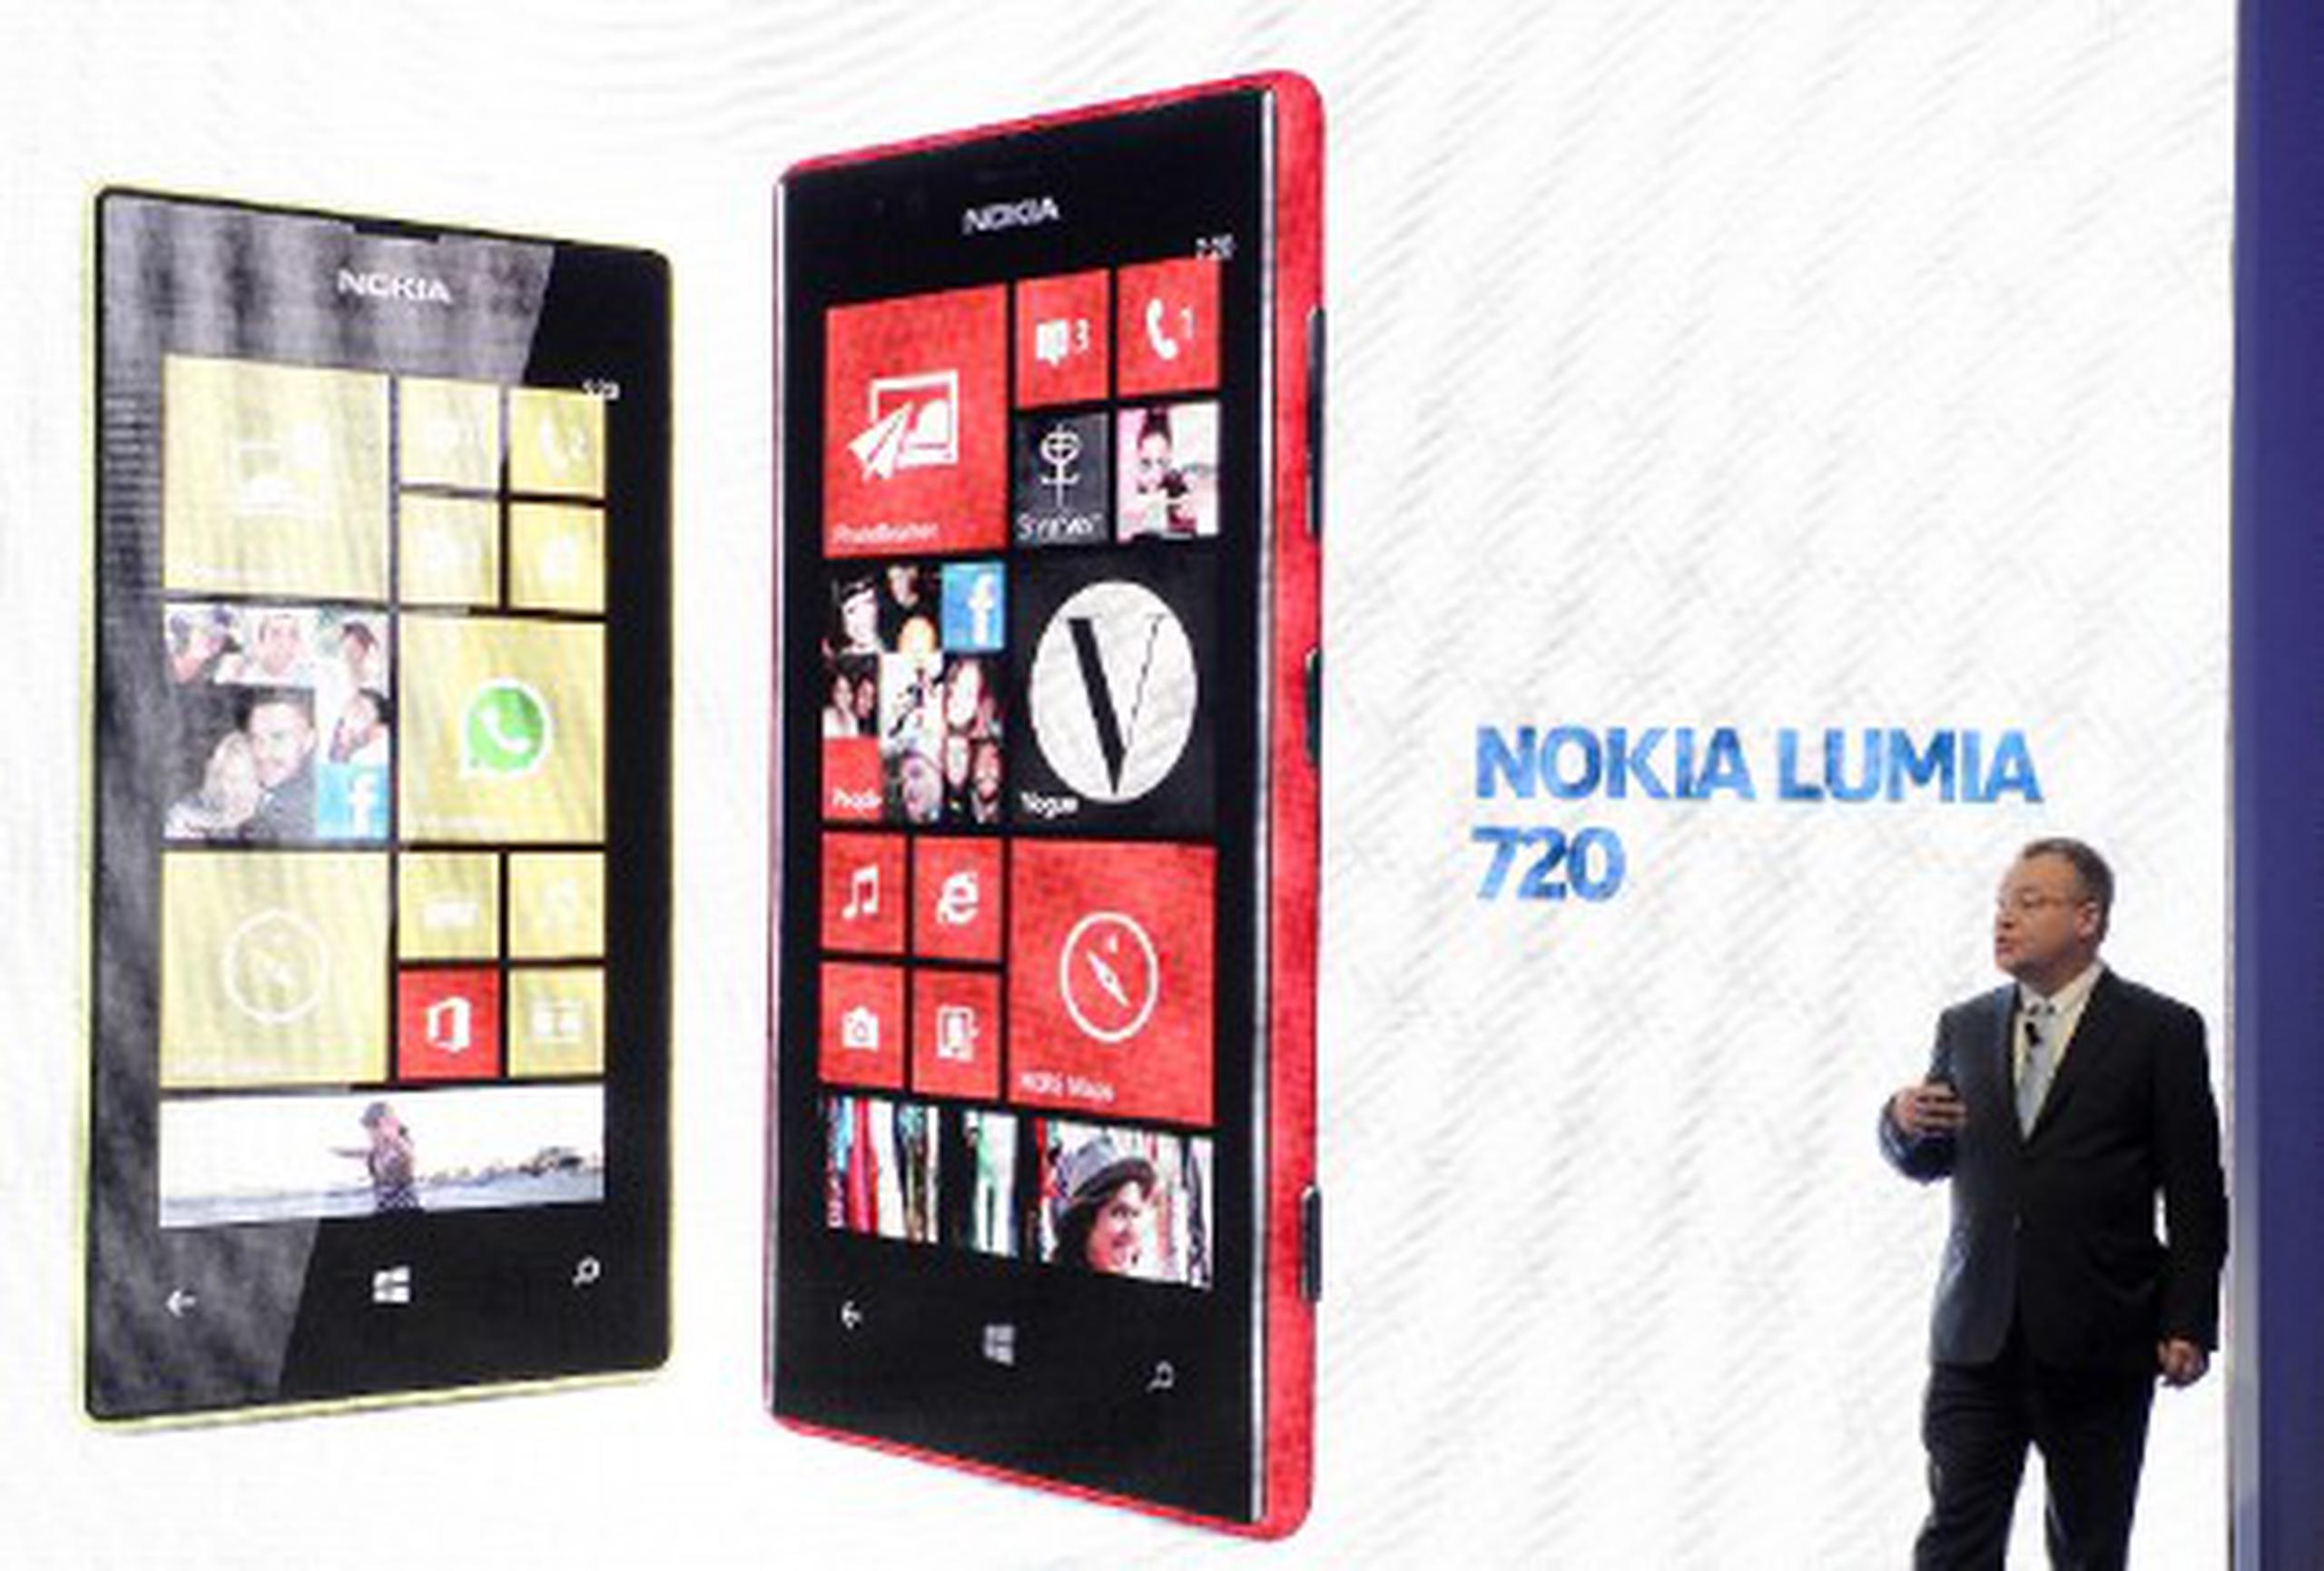 En el Nokia Lumia 720 una de las principales está en la cámara, que incorpora un objetivo gran angular f/1.9, un diseño exclusivo de Carl Zeiss para optimizar la claridad y la nitidez de las instantáneas por la noche, así como una cámara frontal con gran angular.(AFP/Lluis Gene)